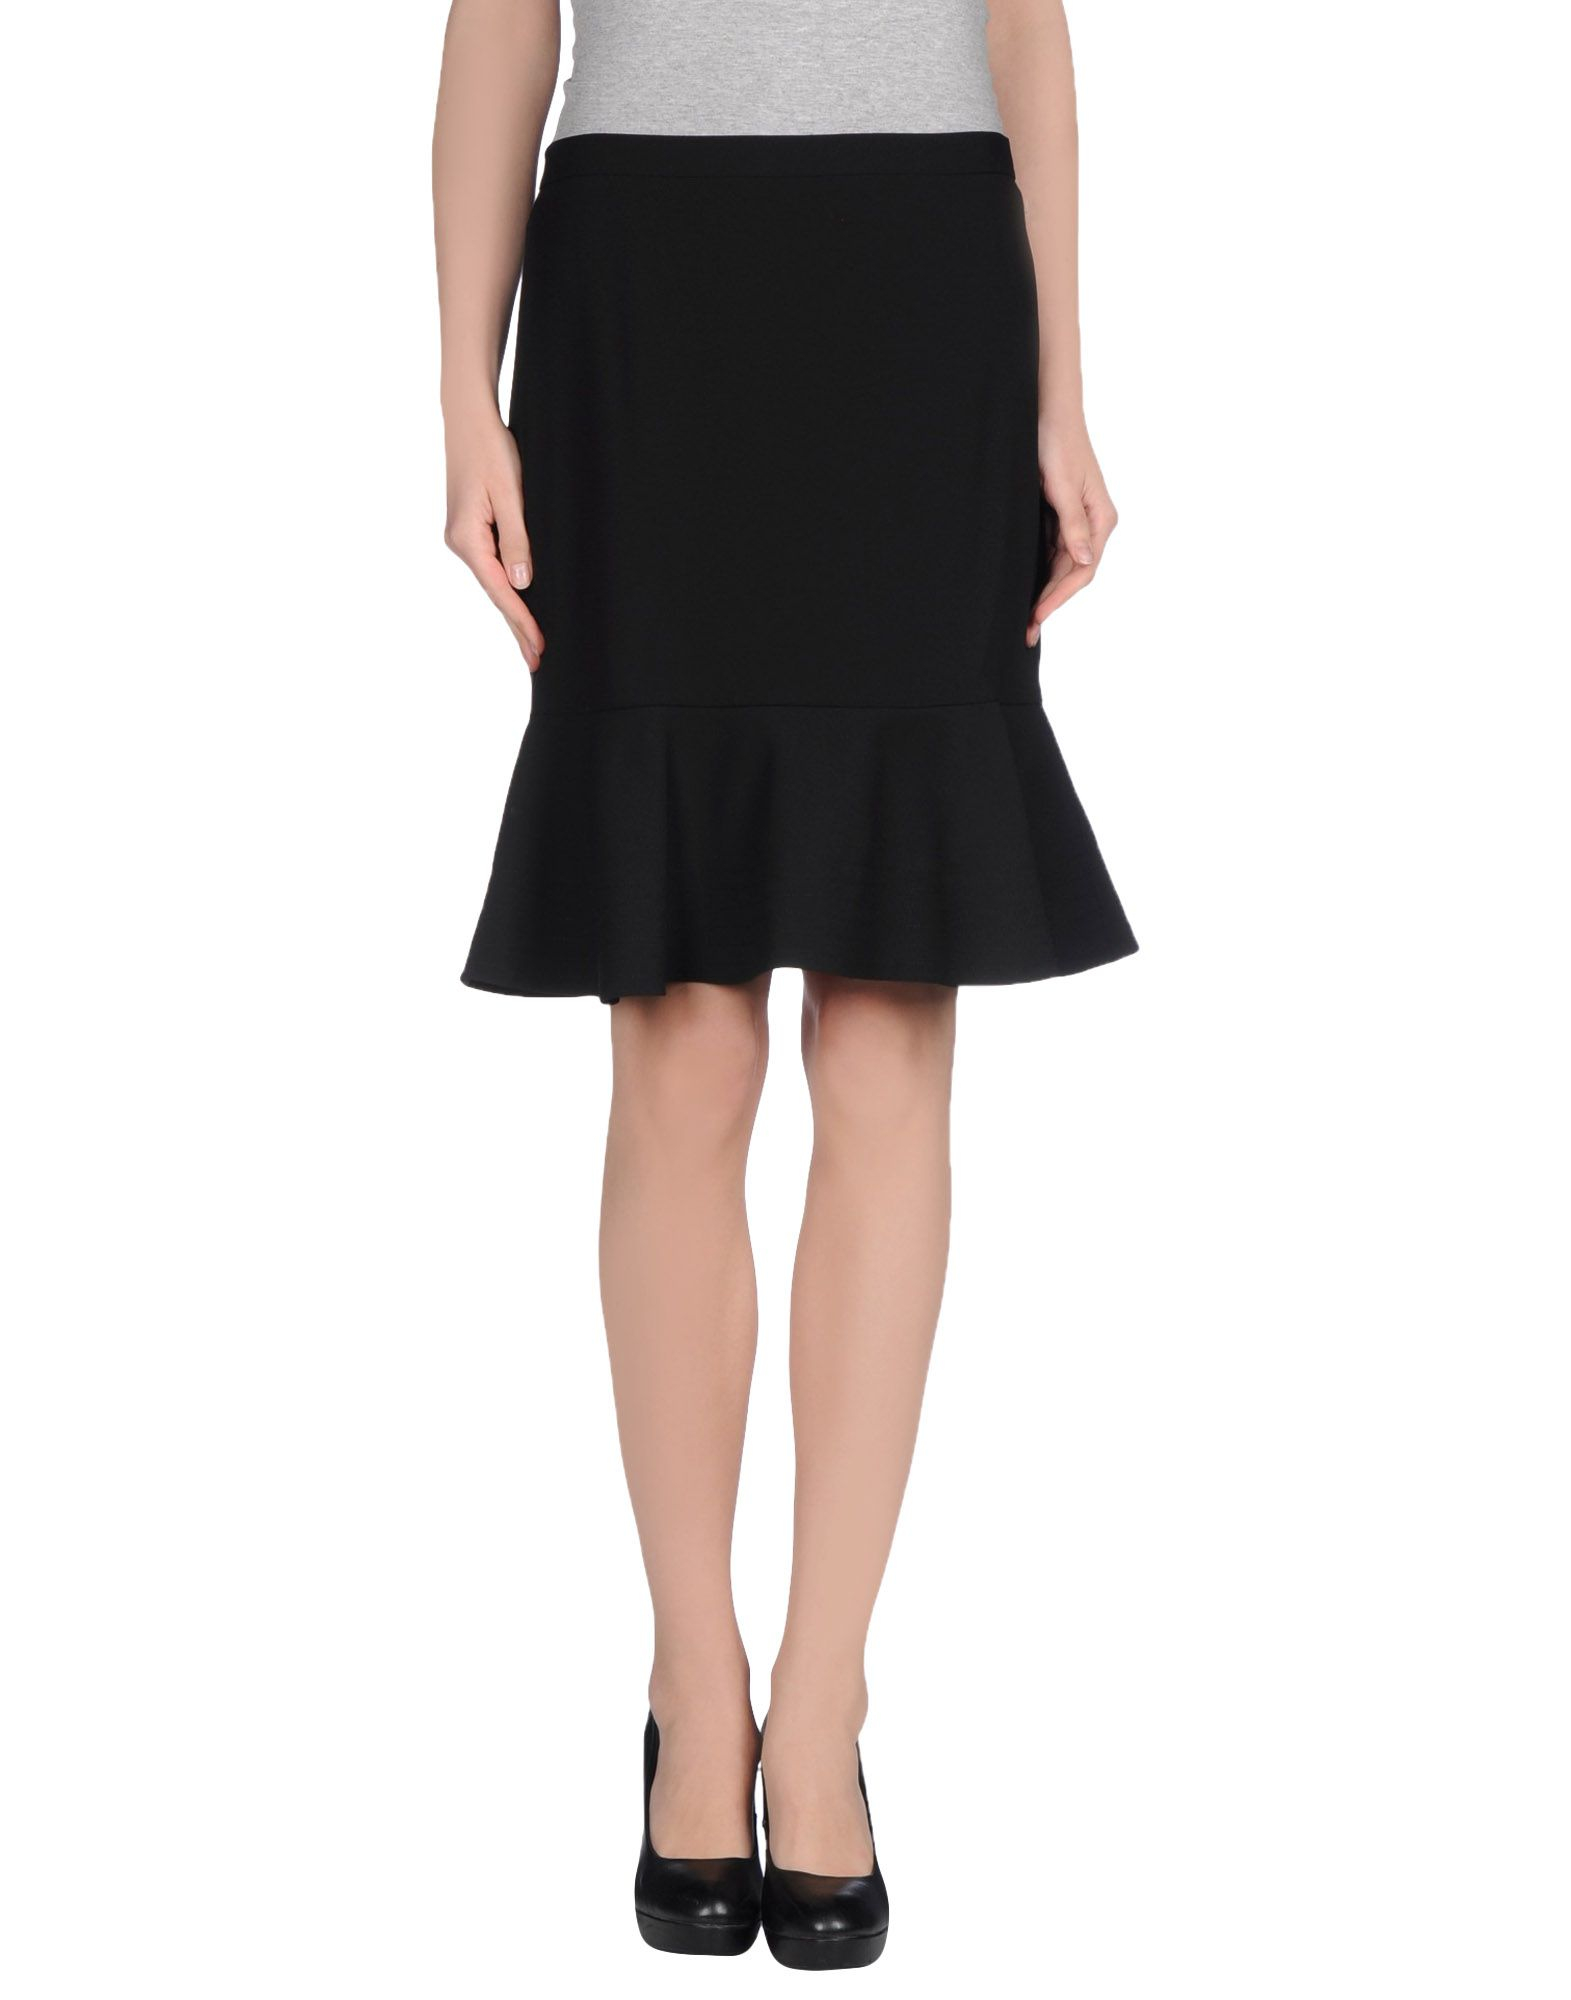 DKNY Knee Length Skirt in Black - Lyst